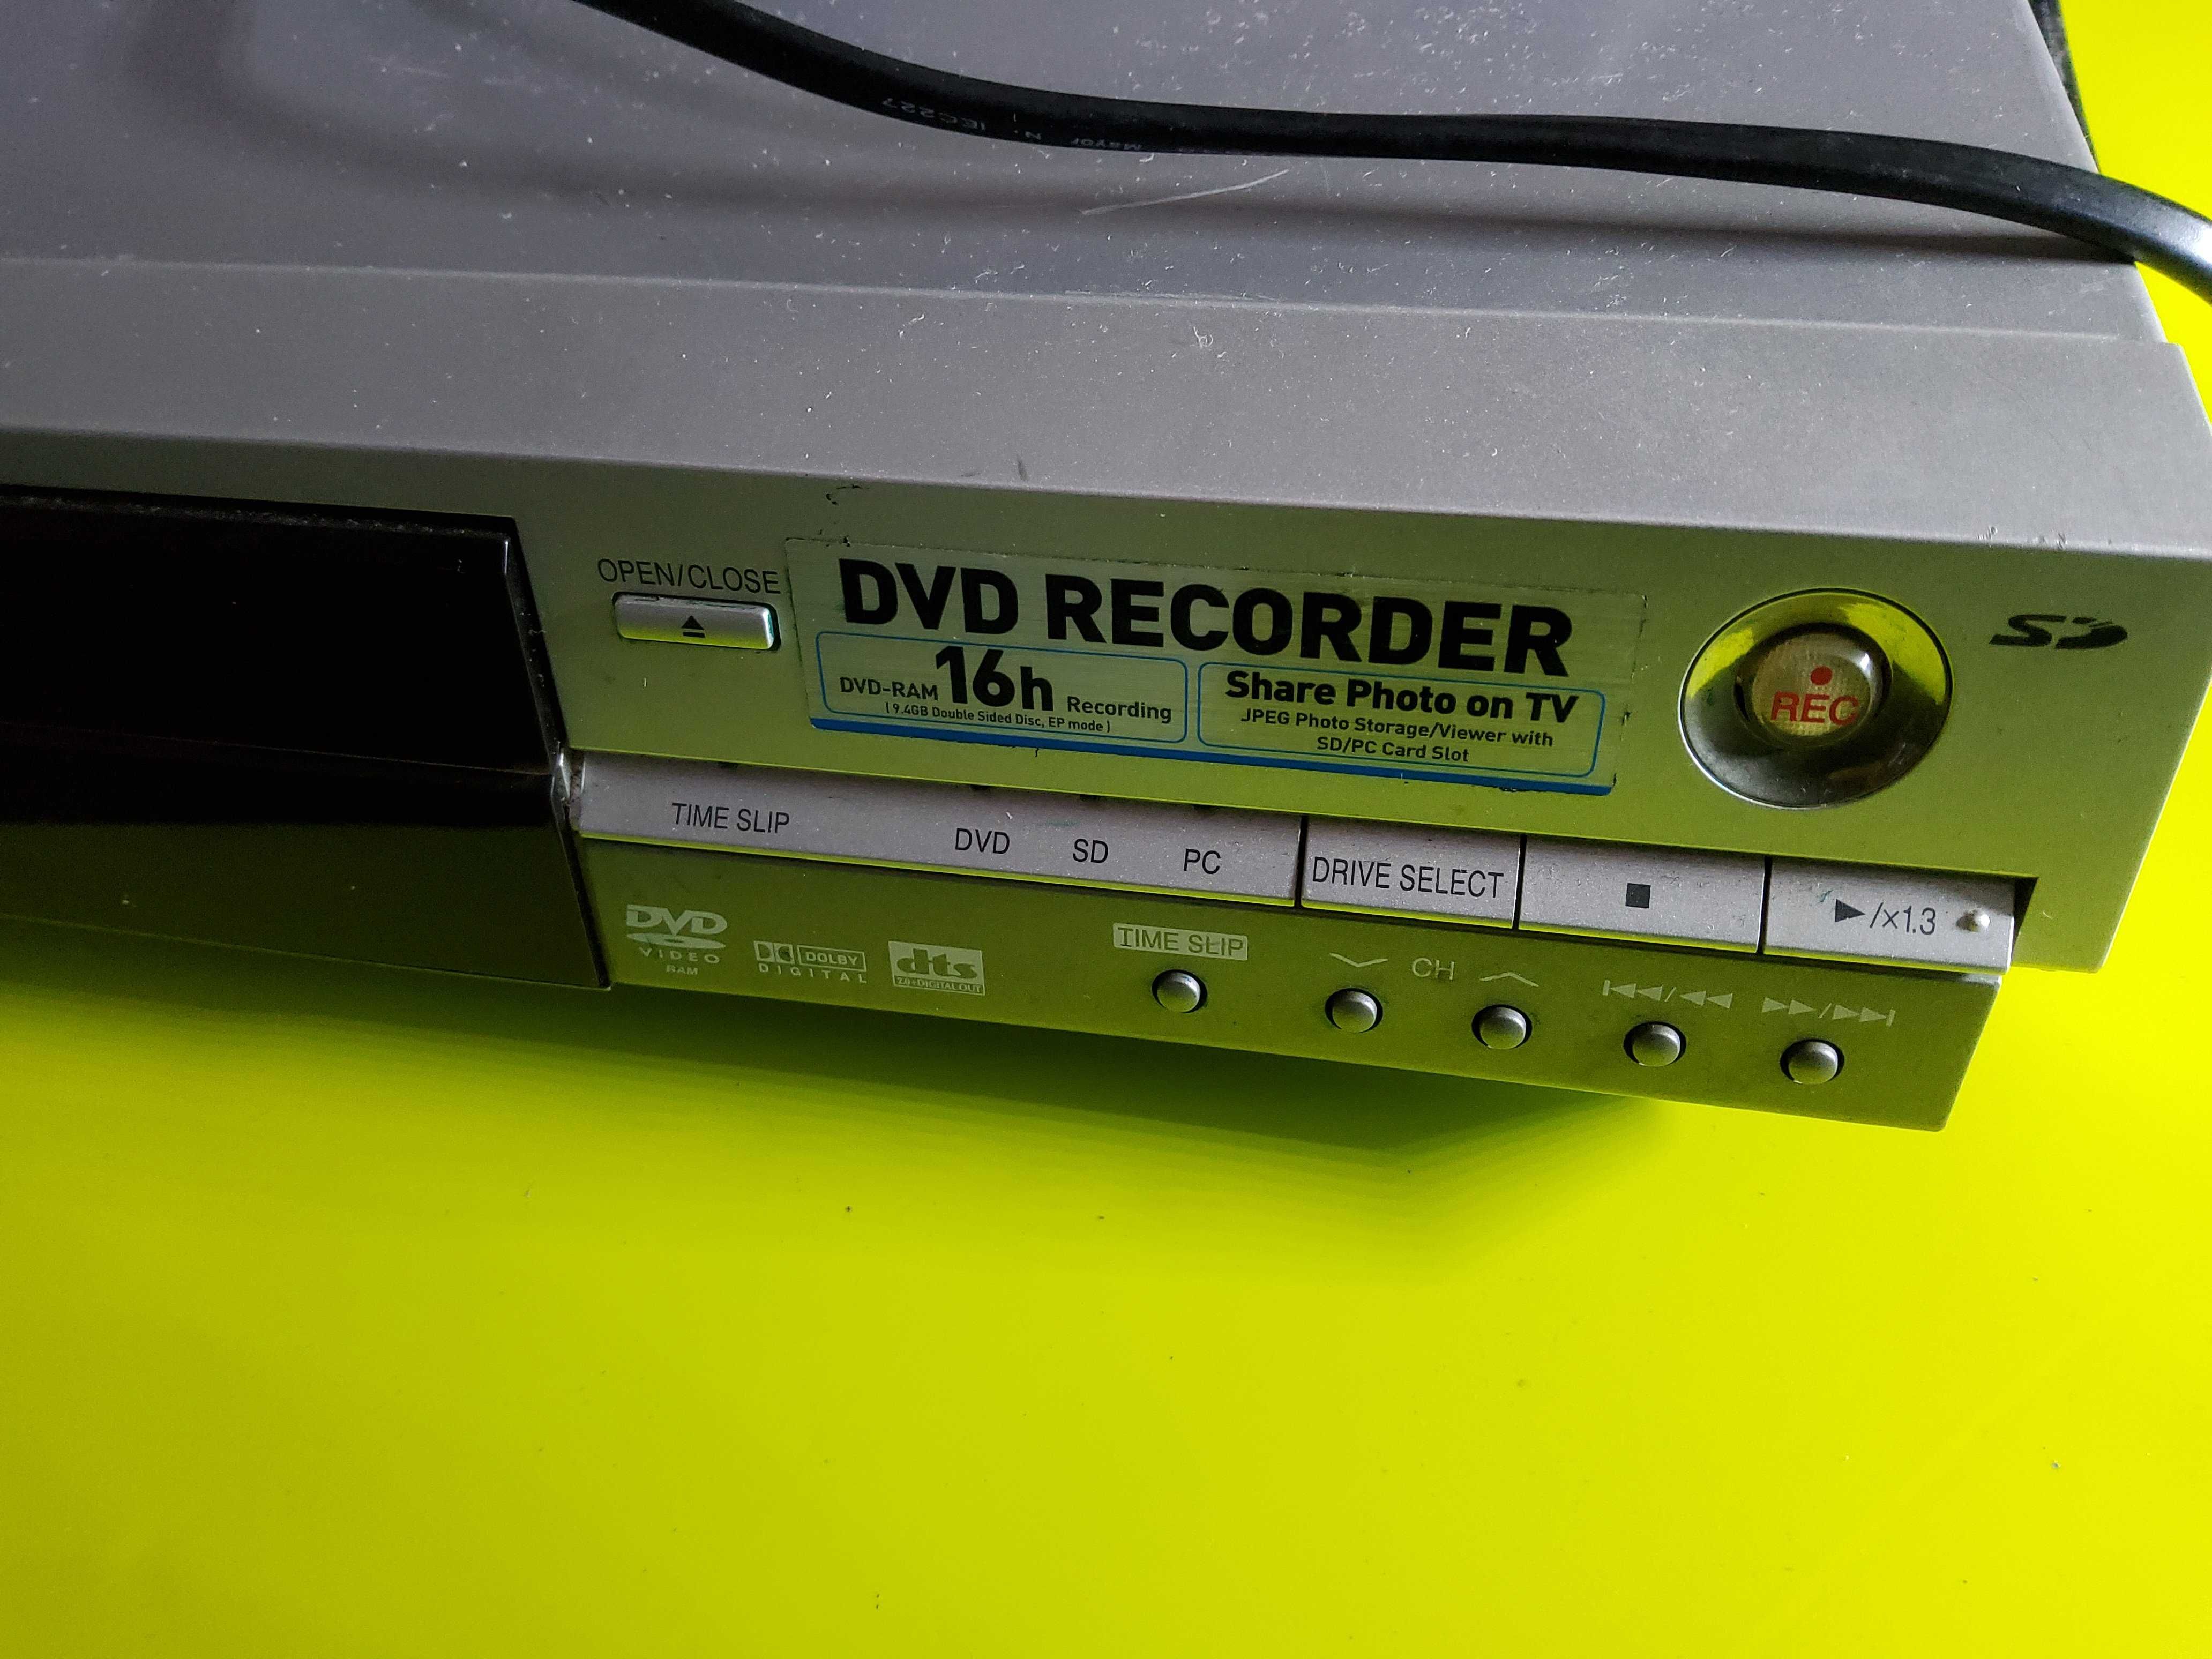 Videogravador Panasonic DMR-E65 com comando